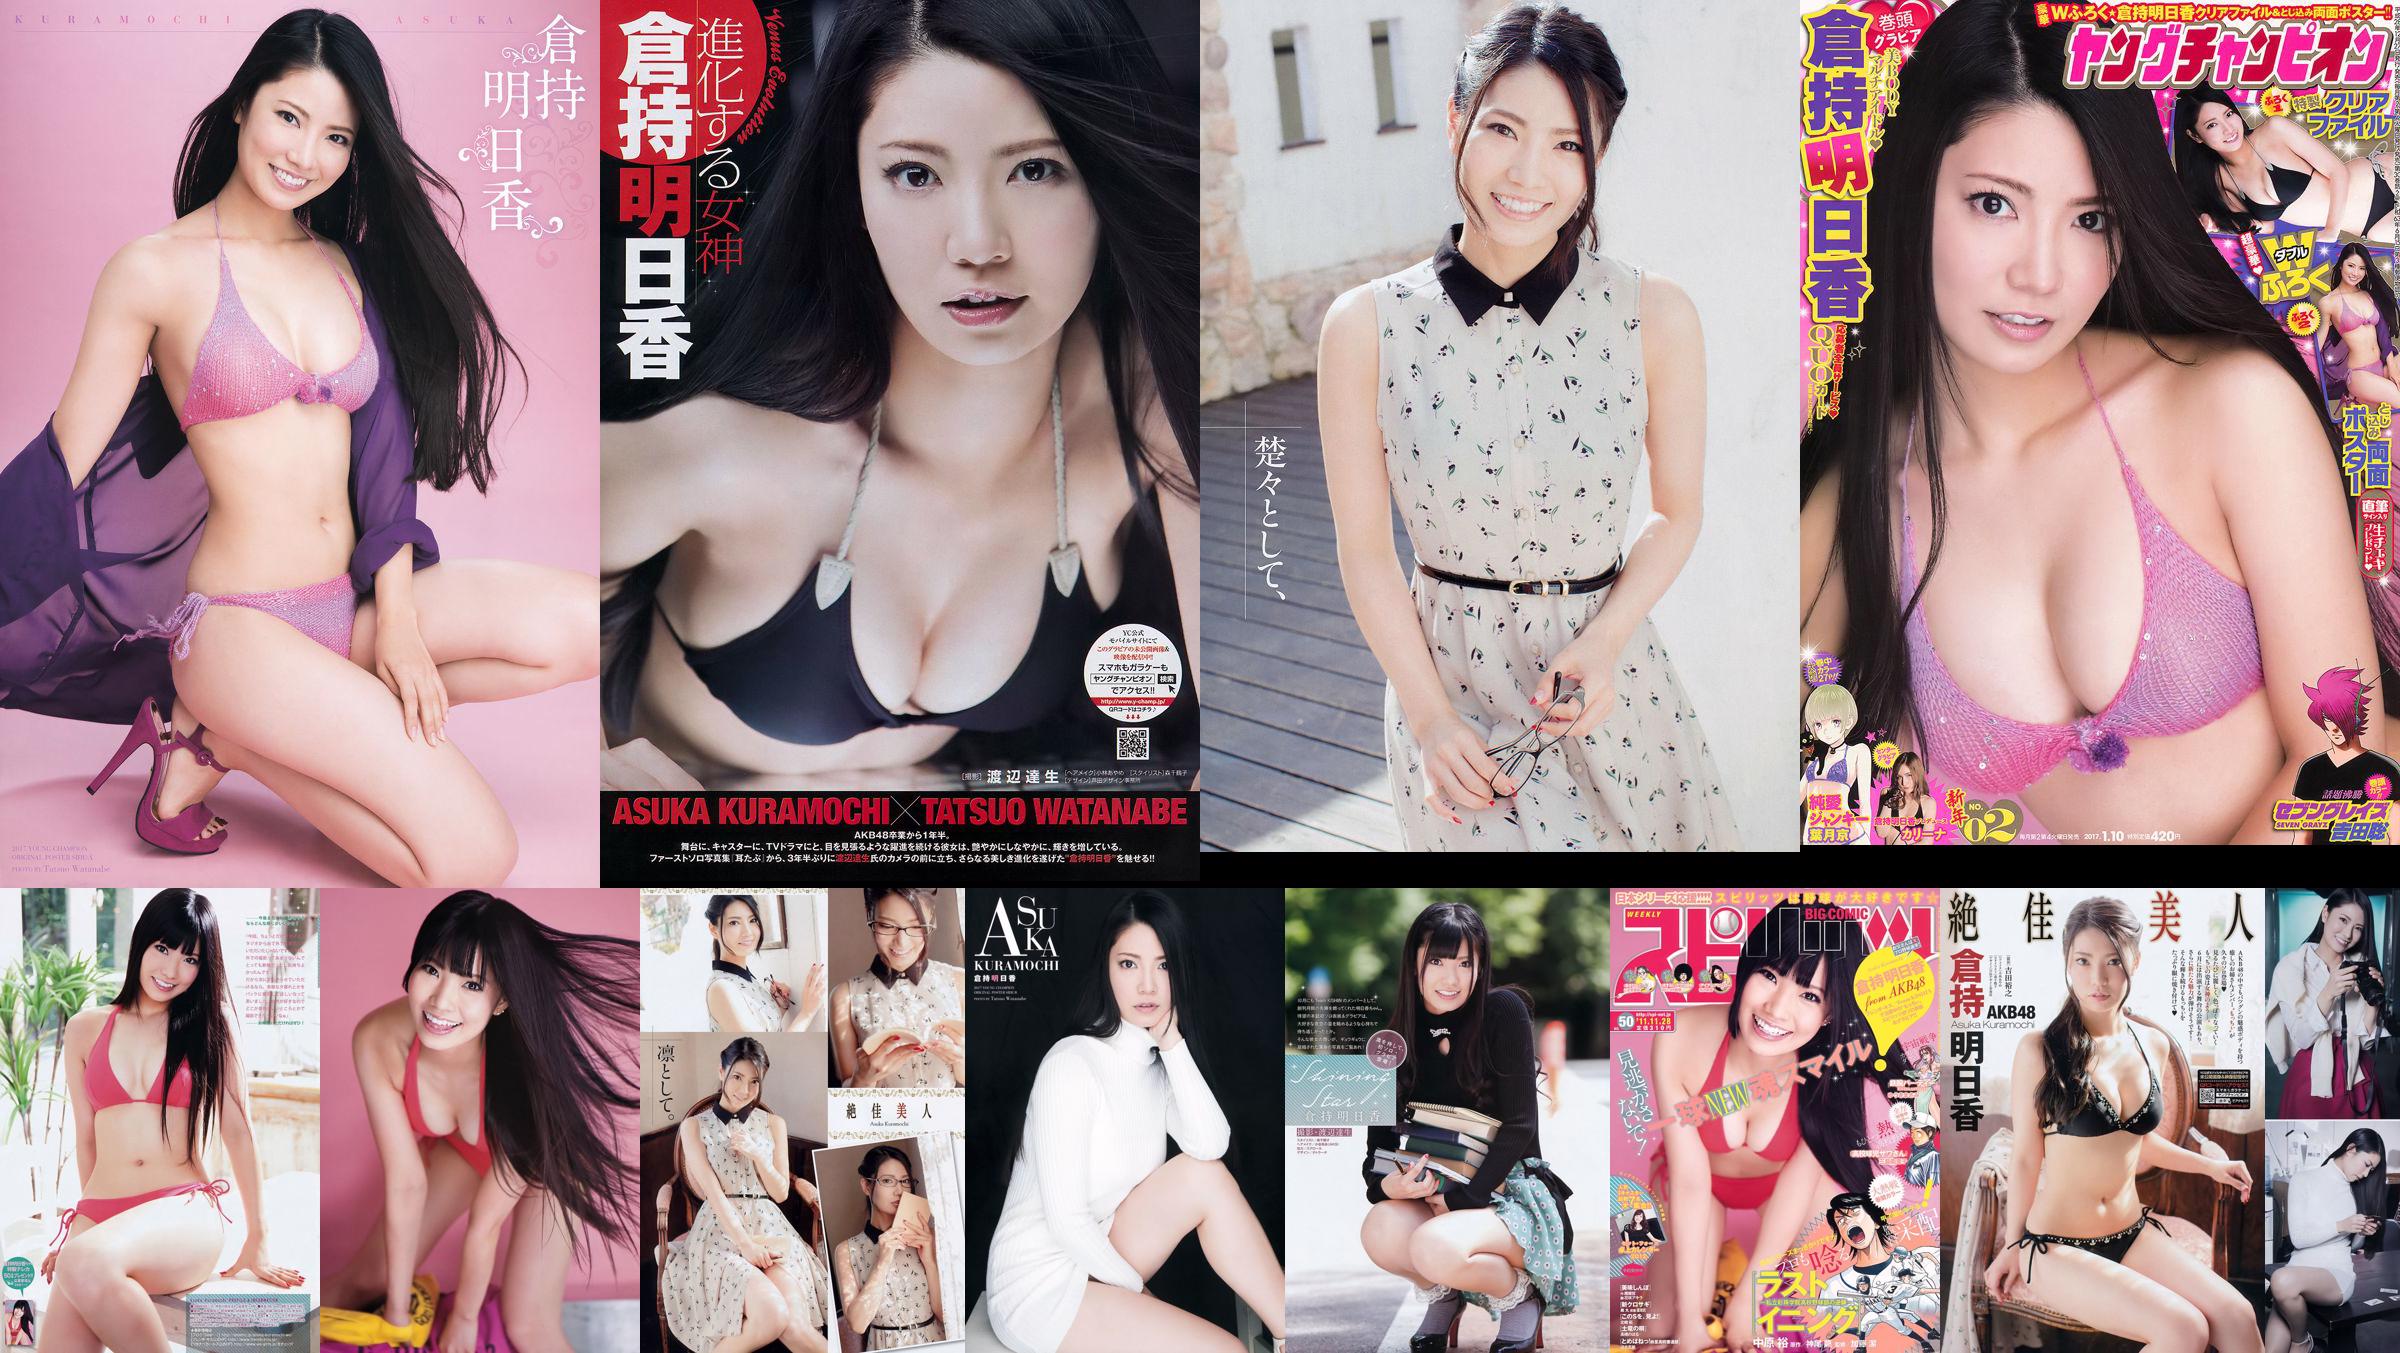 [Junger Champion] Asuka Kuramochi 2015 No.09 Photo Magazine No.61adfc Seite 7